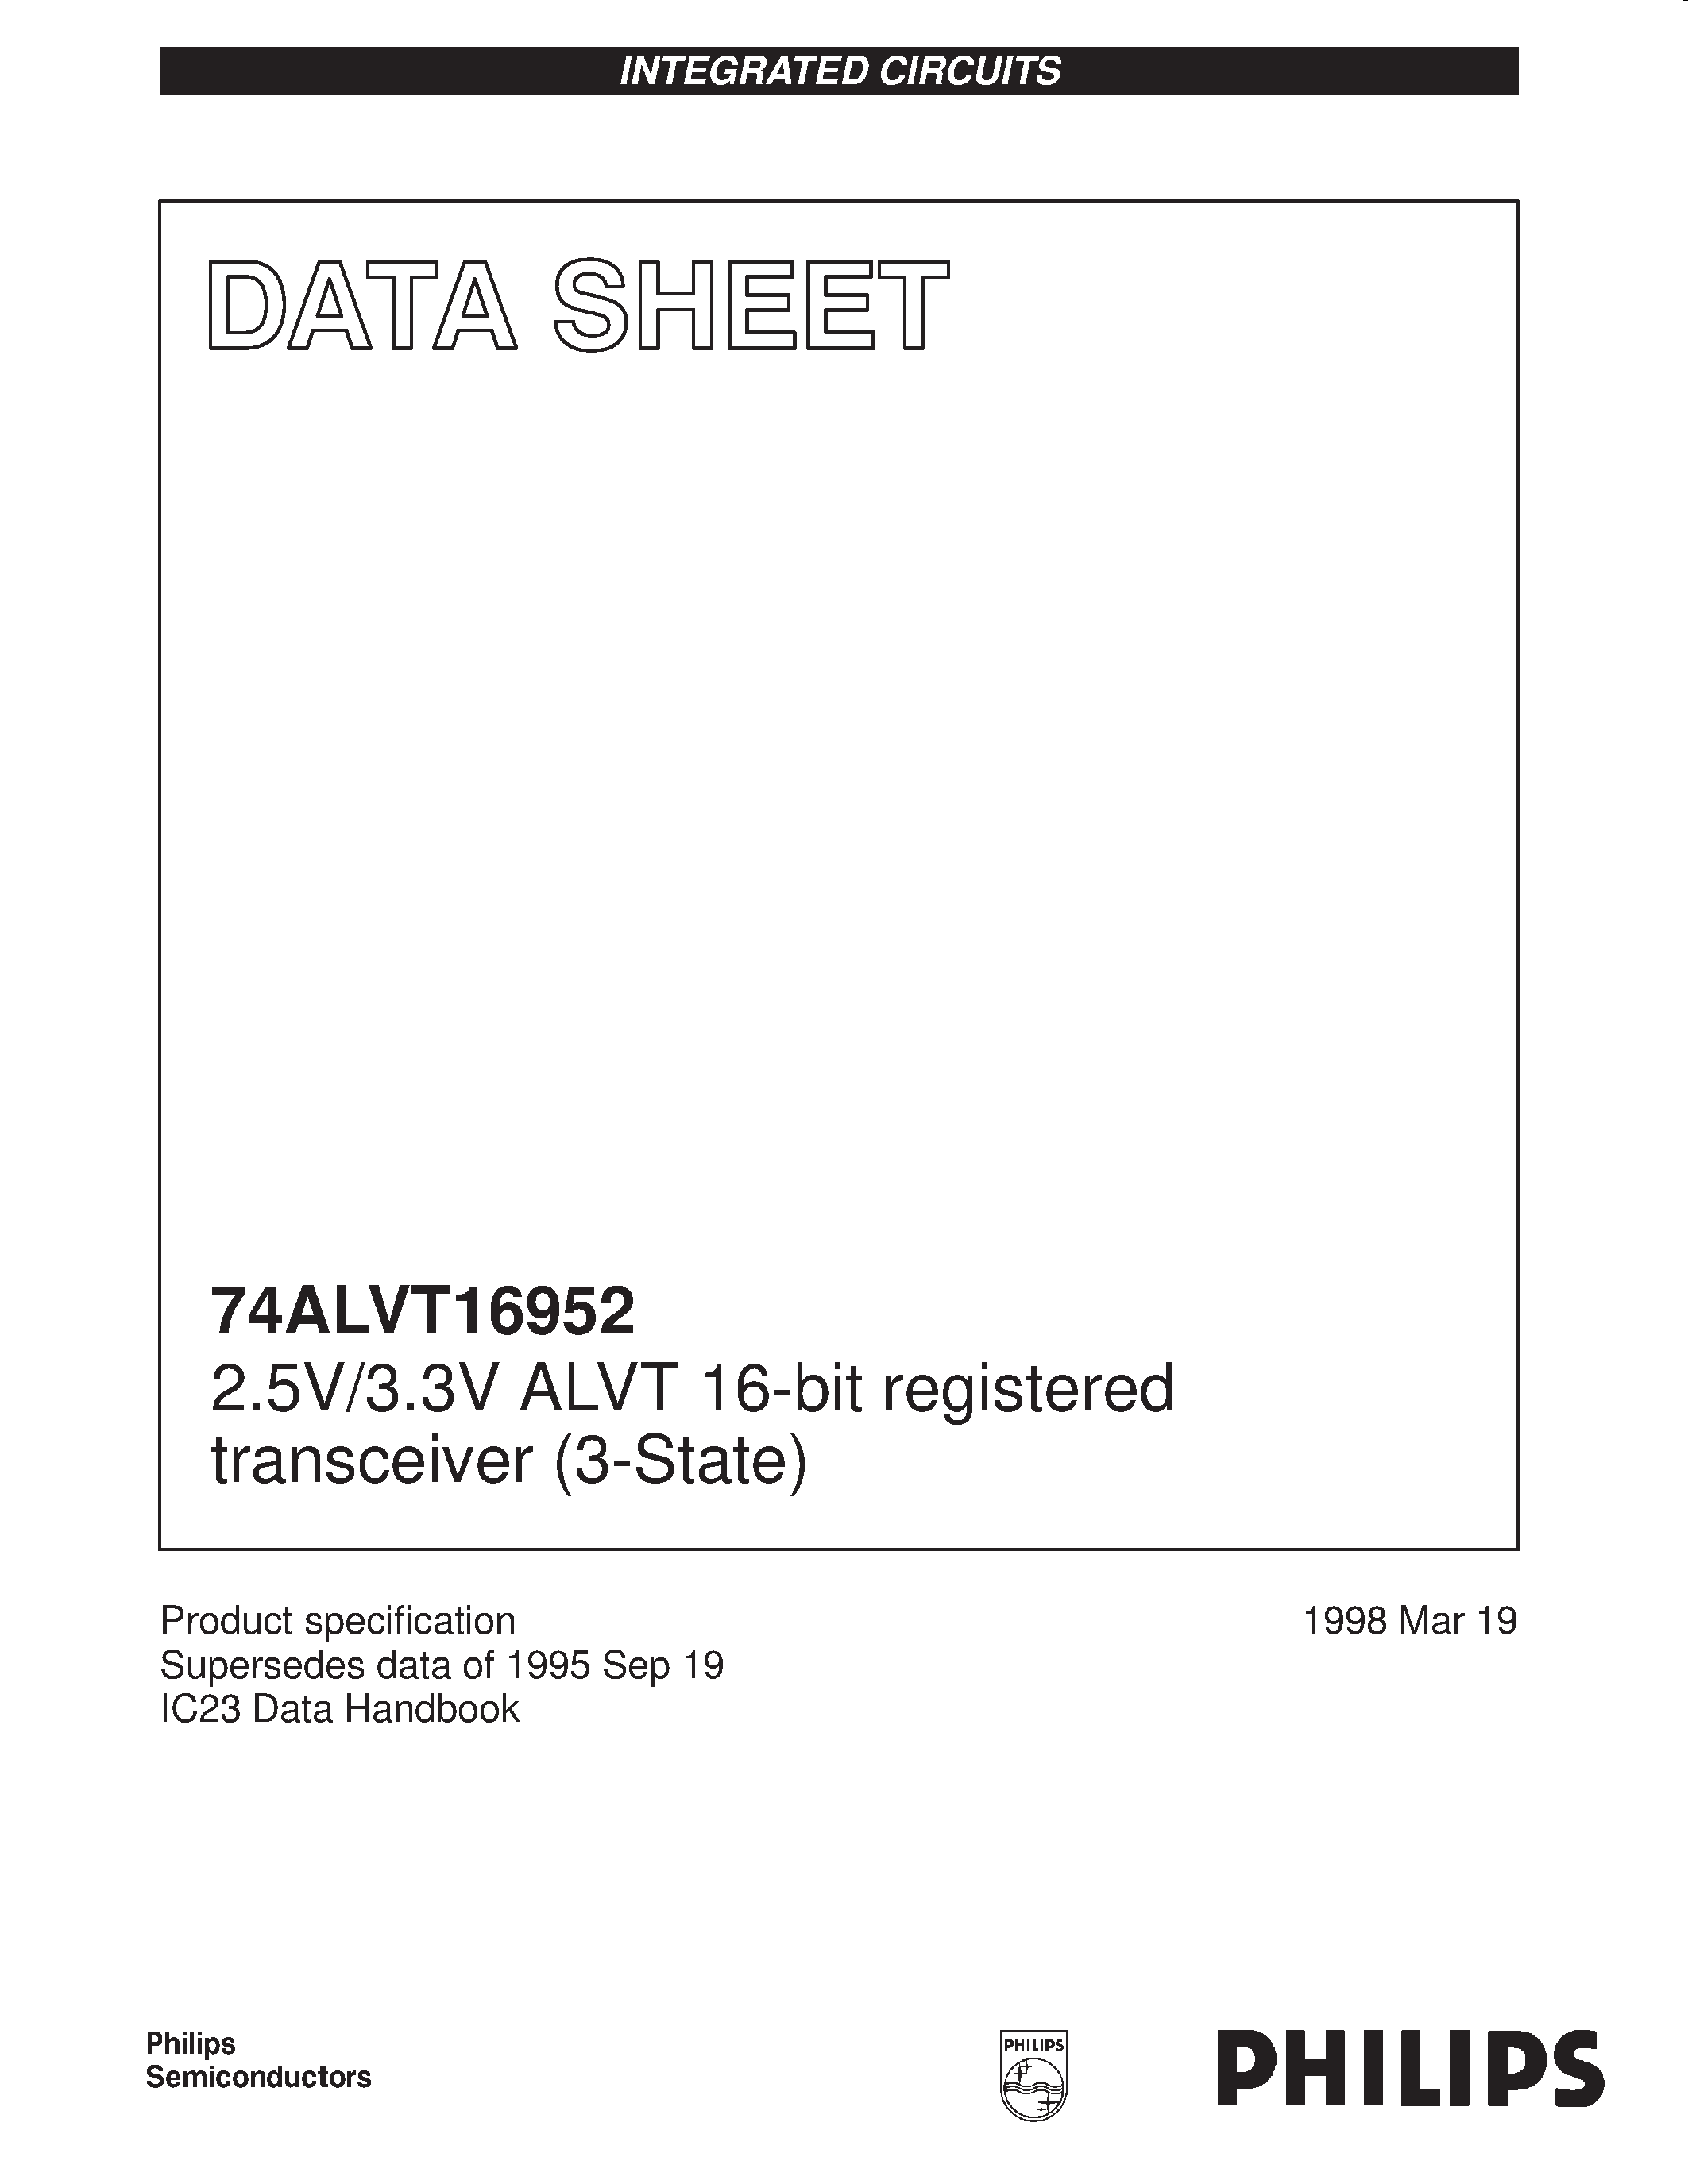 Datasheet 74ALVT16952DL - 2.5V/3.3V ALVT 16-bit registered transceiver 3-State page 1